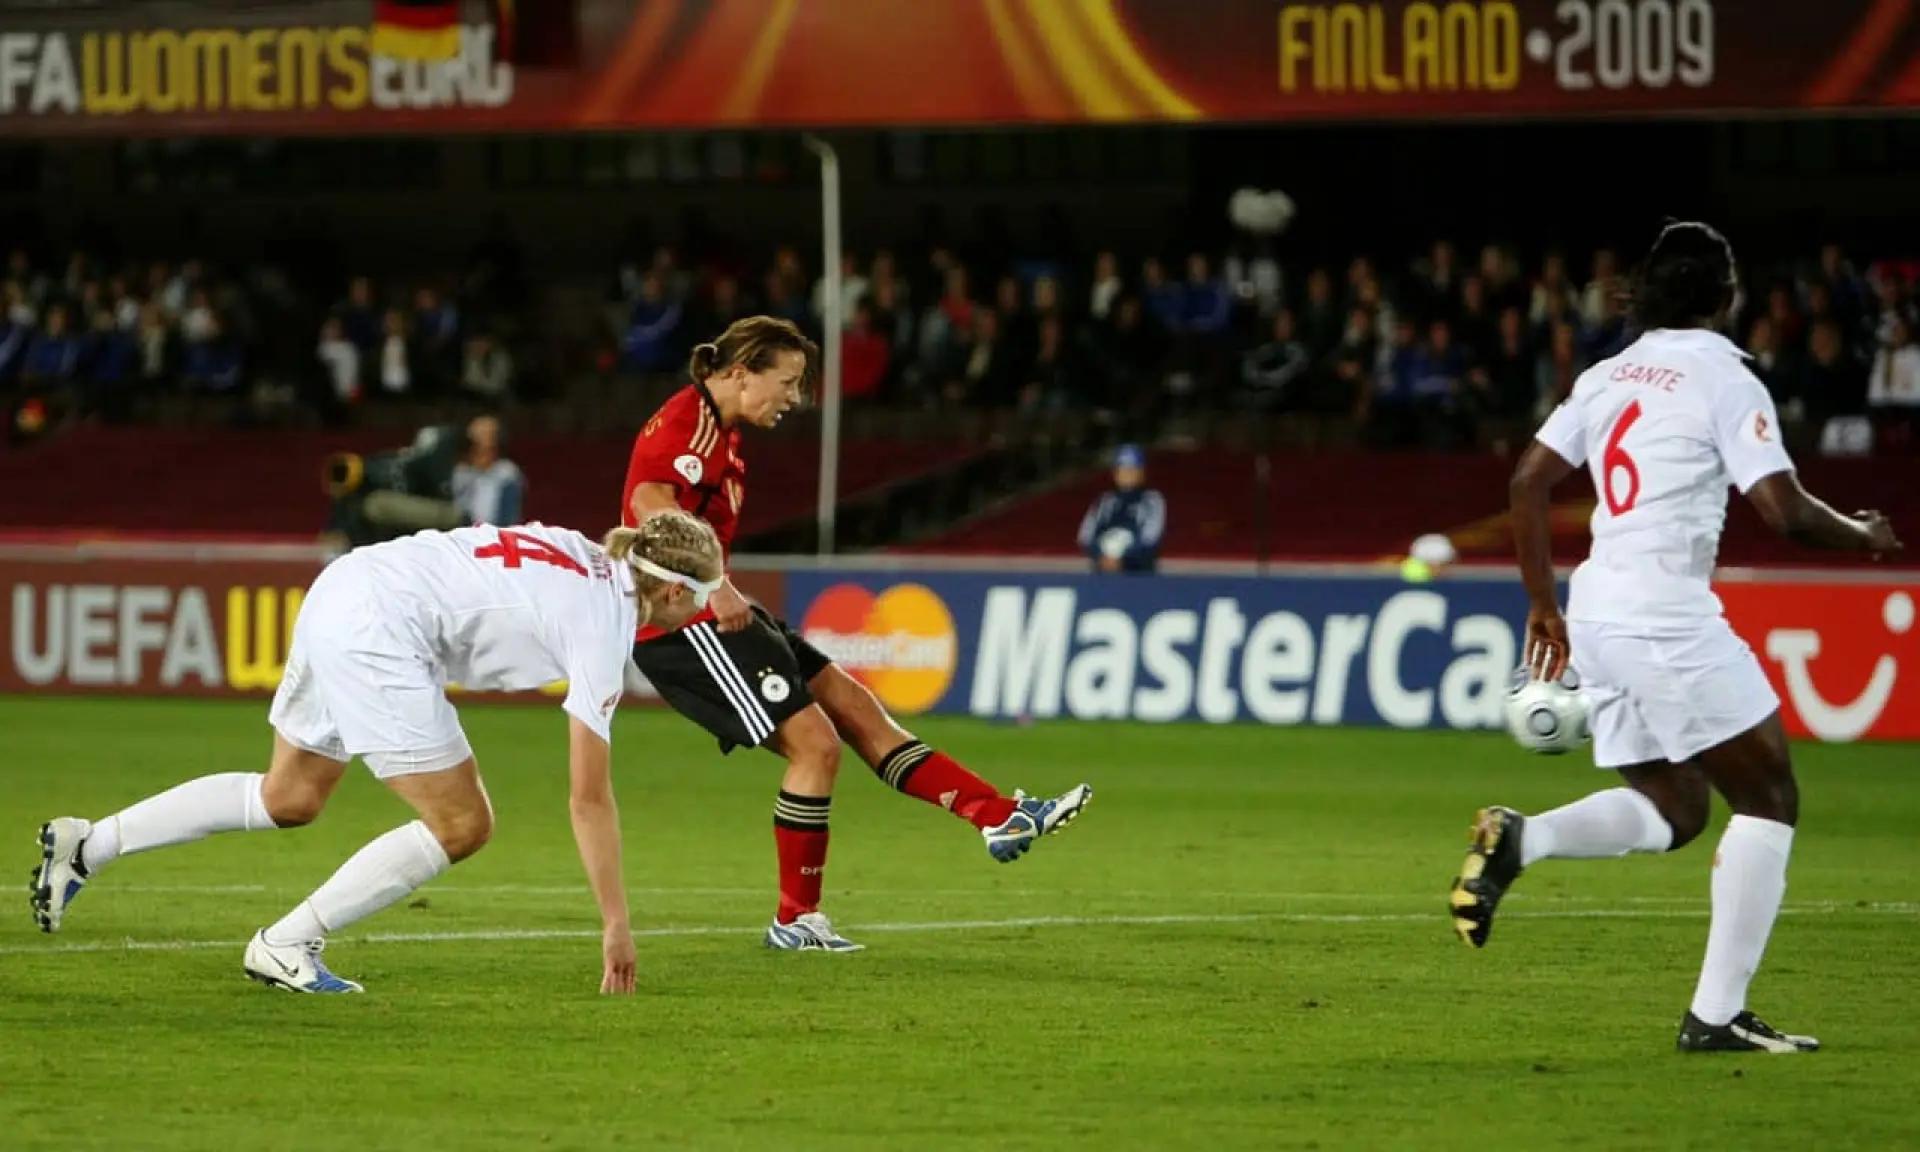 England v Germany 2009